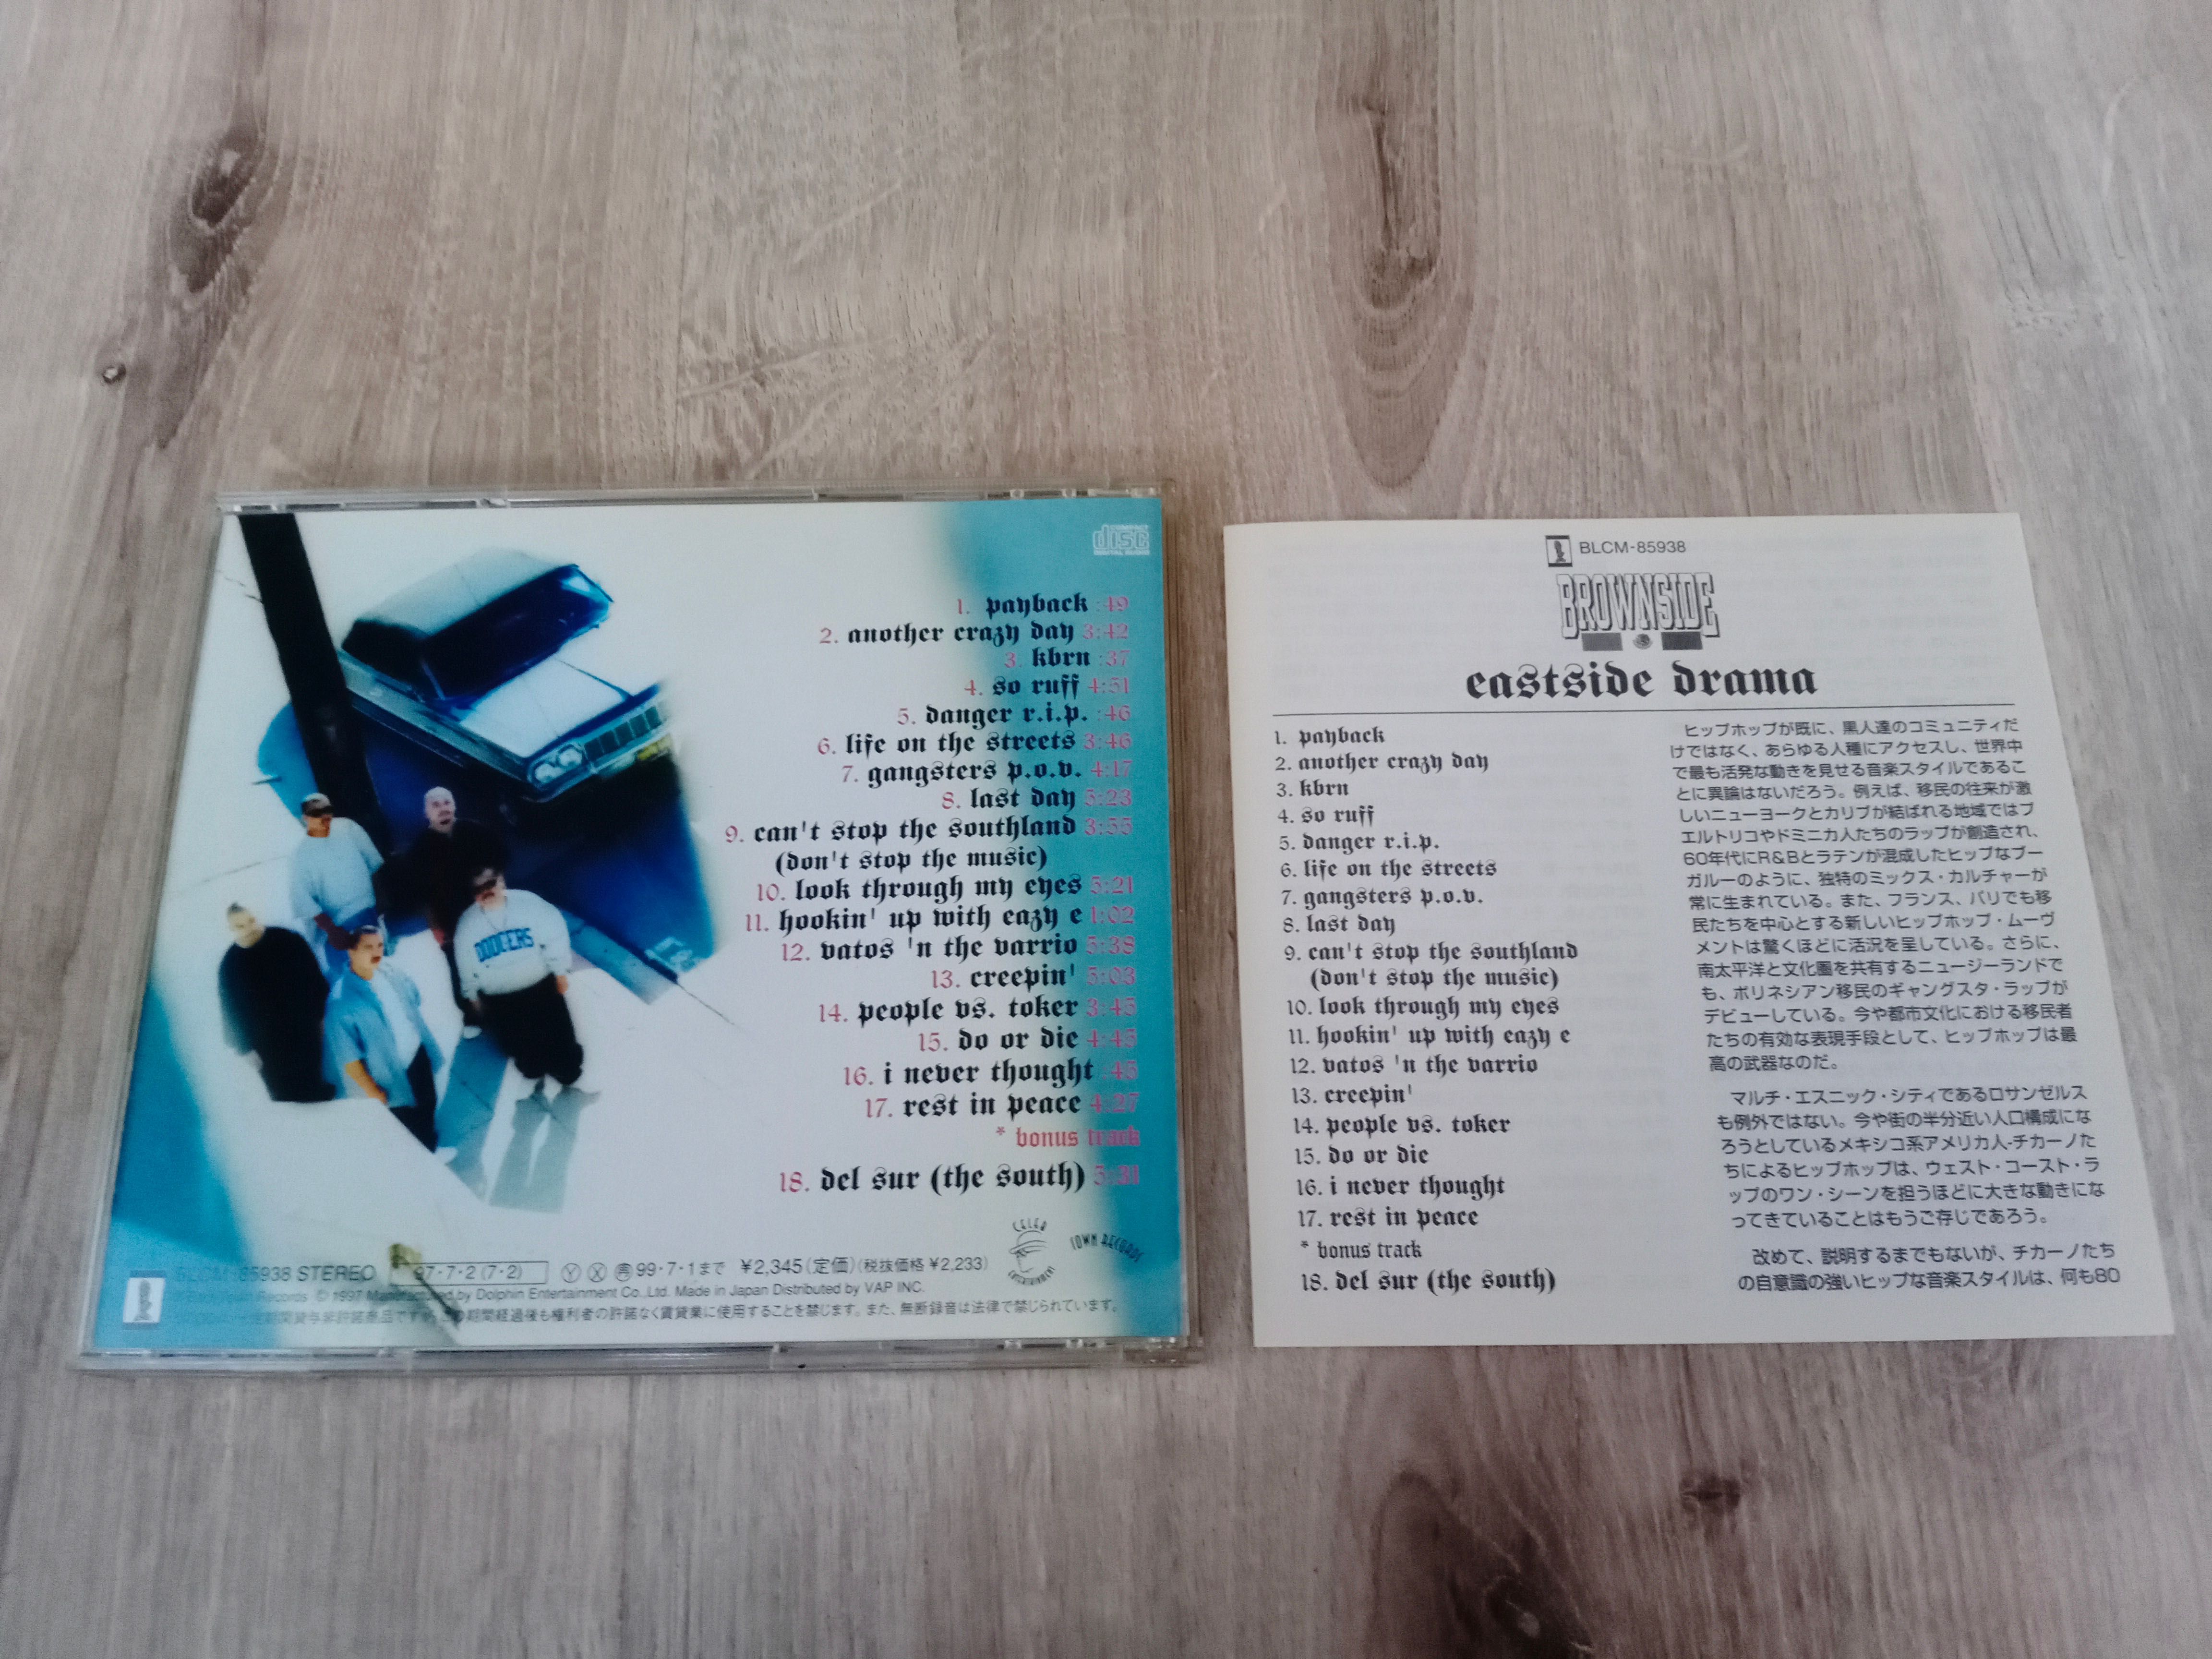 Brownside ‎– Eastside Drama 1997 оригинальное японское издание CD rap